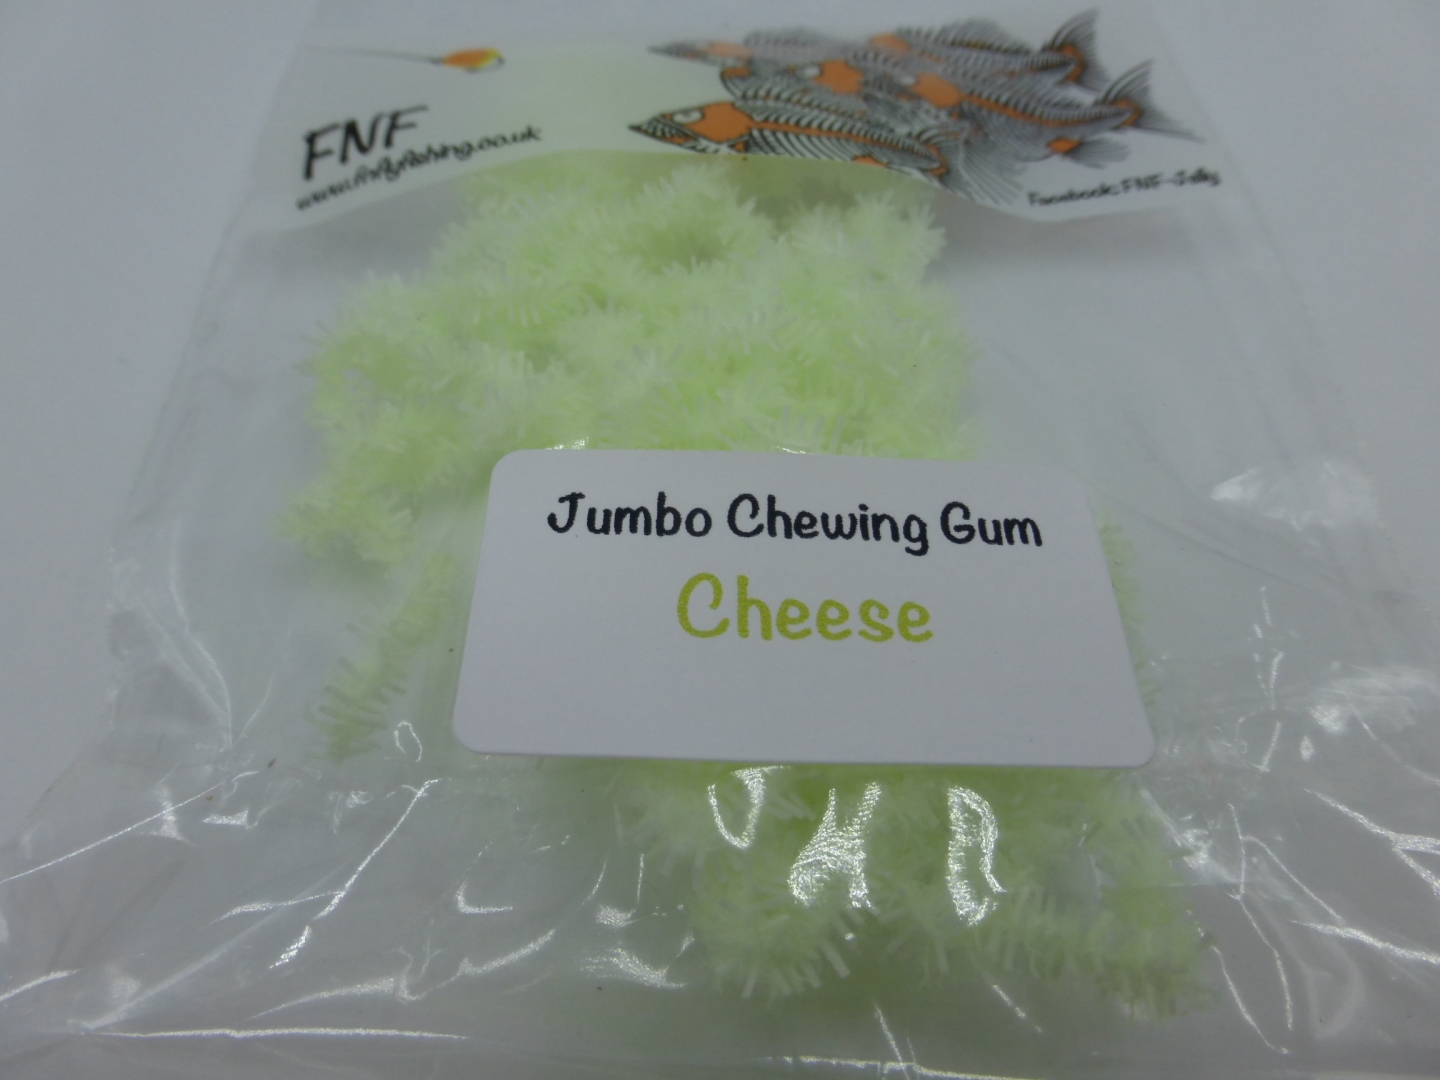 FNF Jumbo Chewing Gum - Cheese